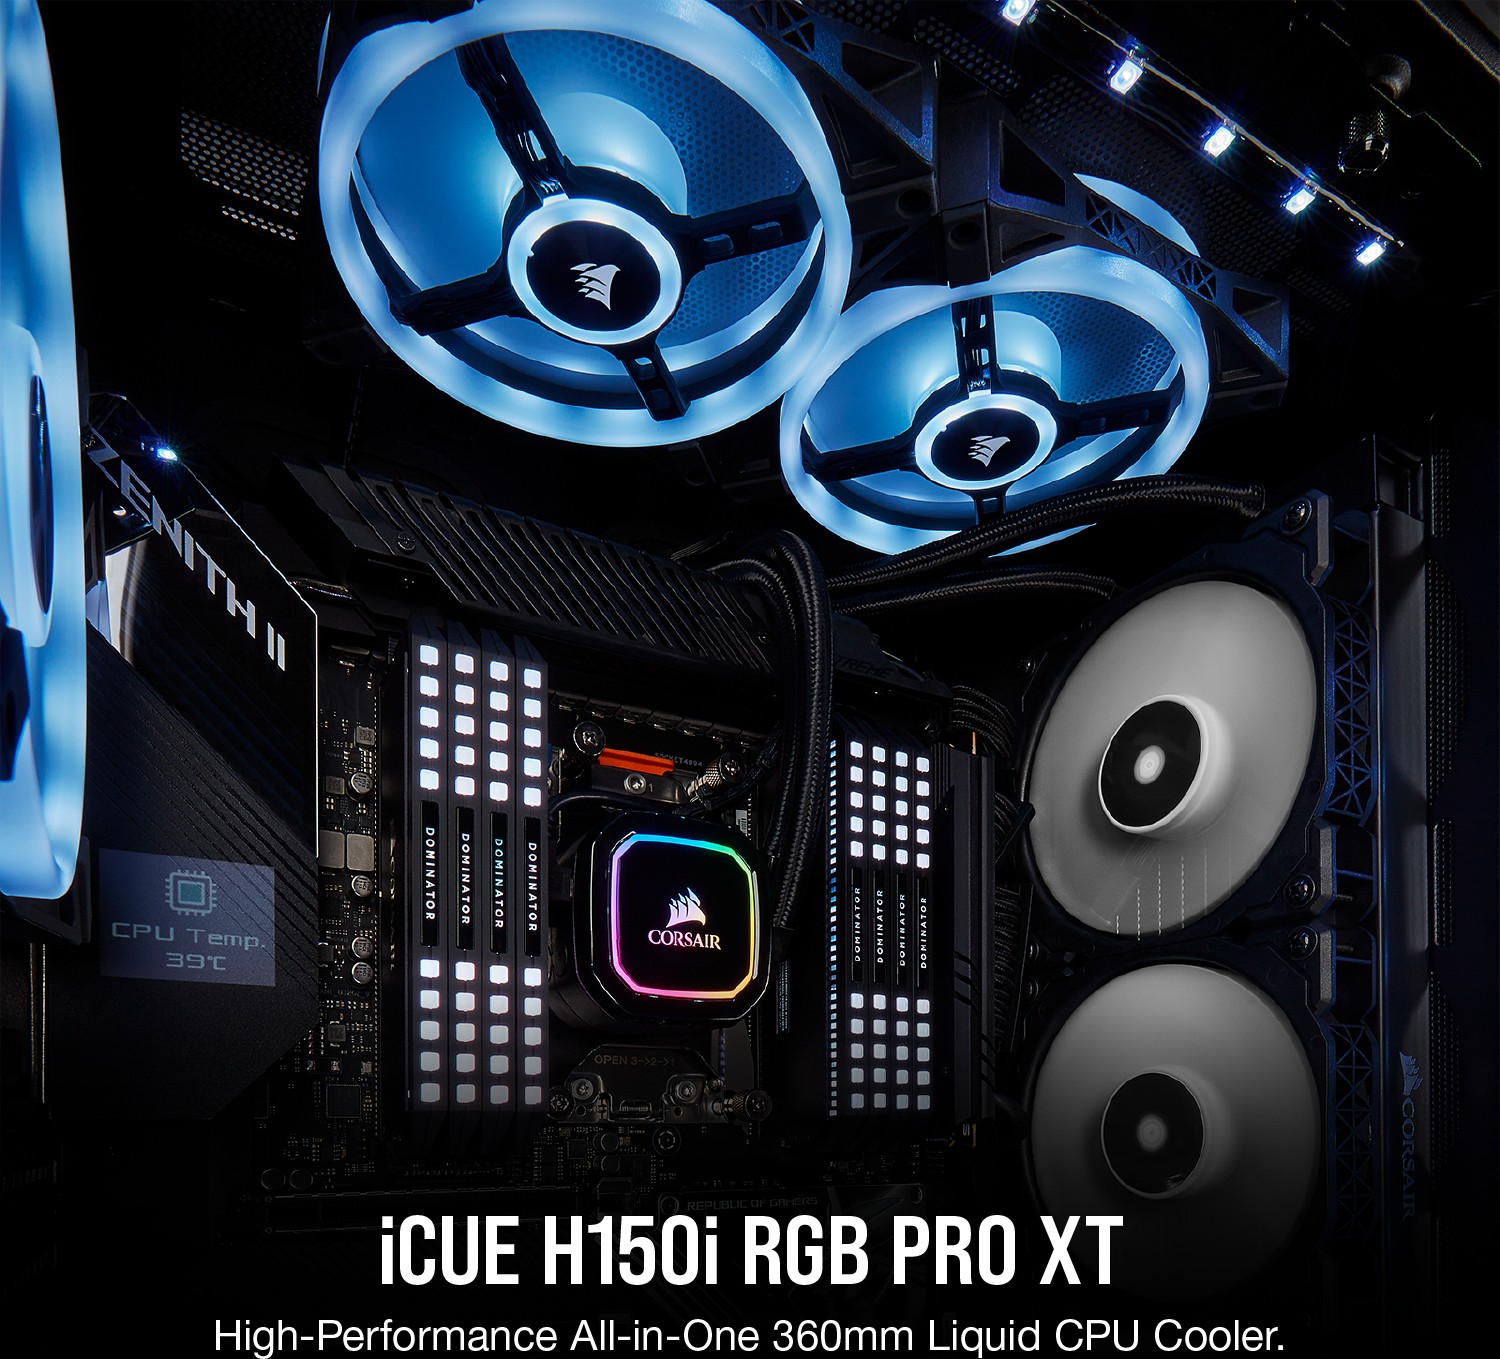 Corsair iCUE H150i RGB Pro XT